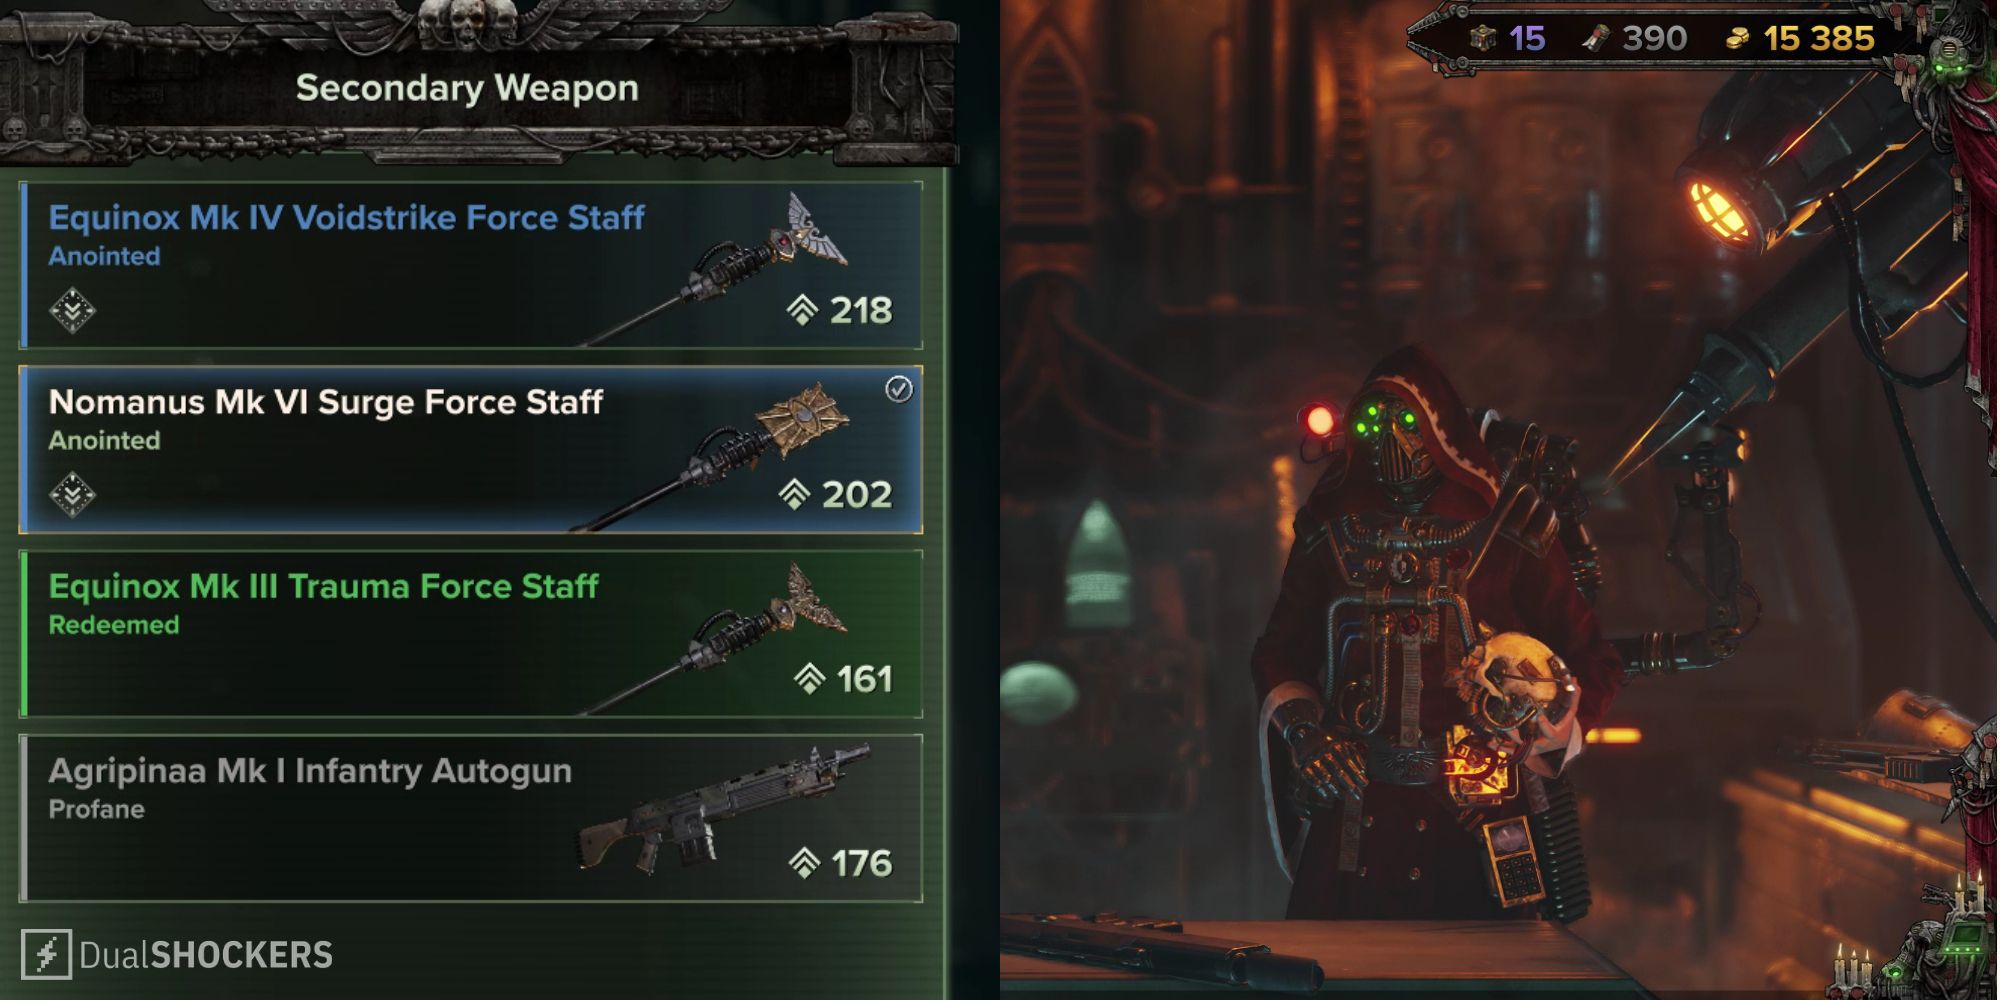 How to upgrade weapons in Warhammer 40K: Darktide